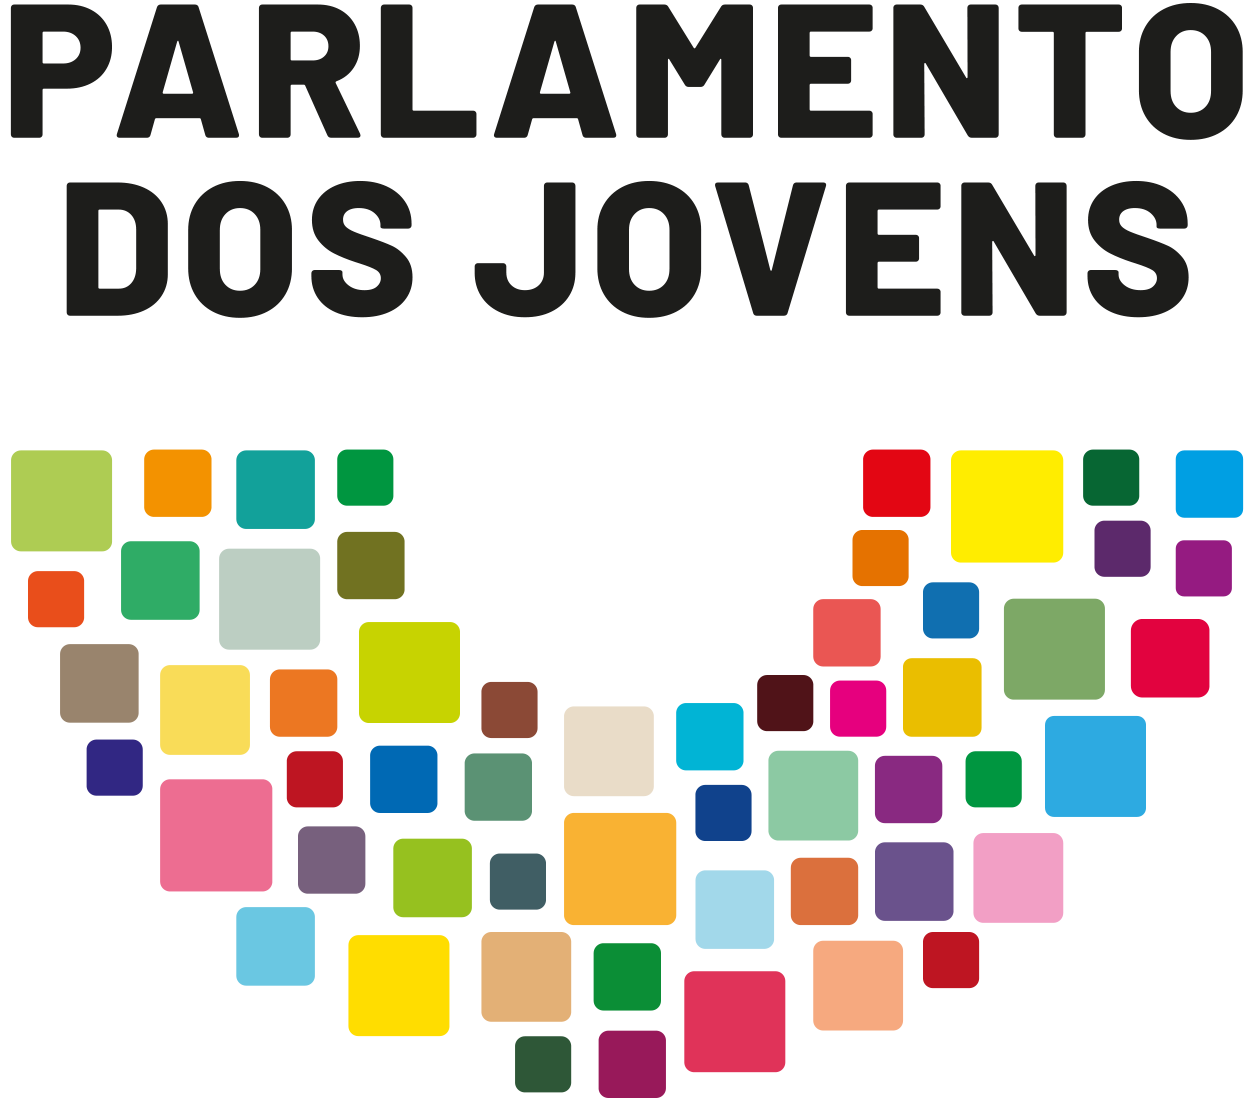 Parlamento dos Jovens